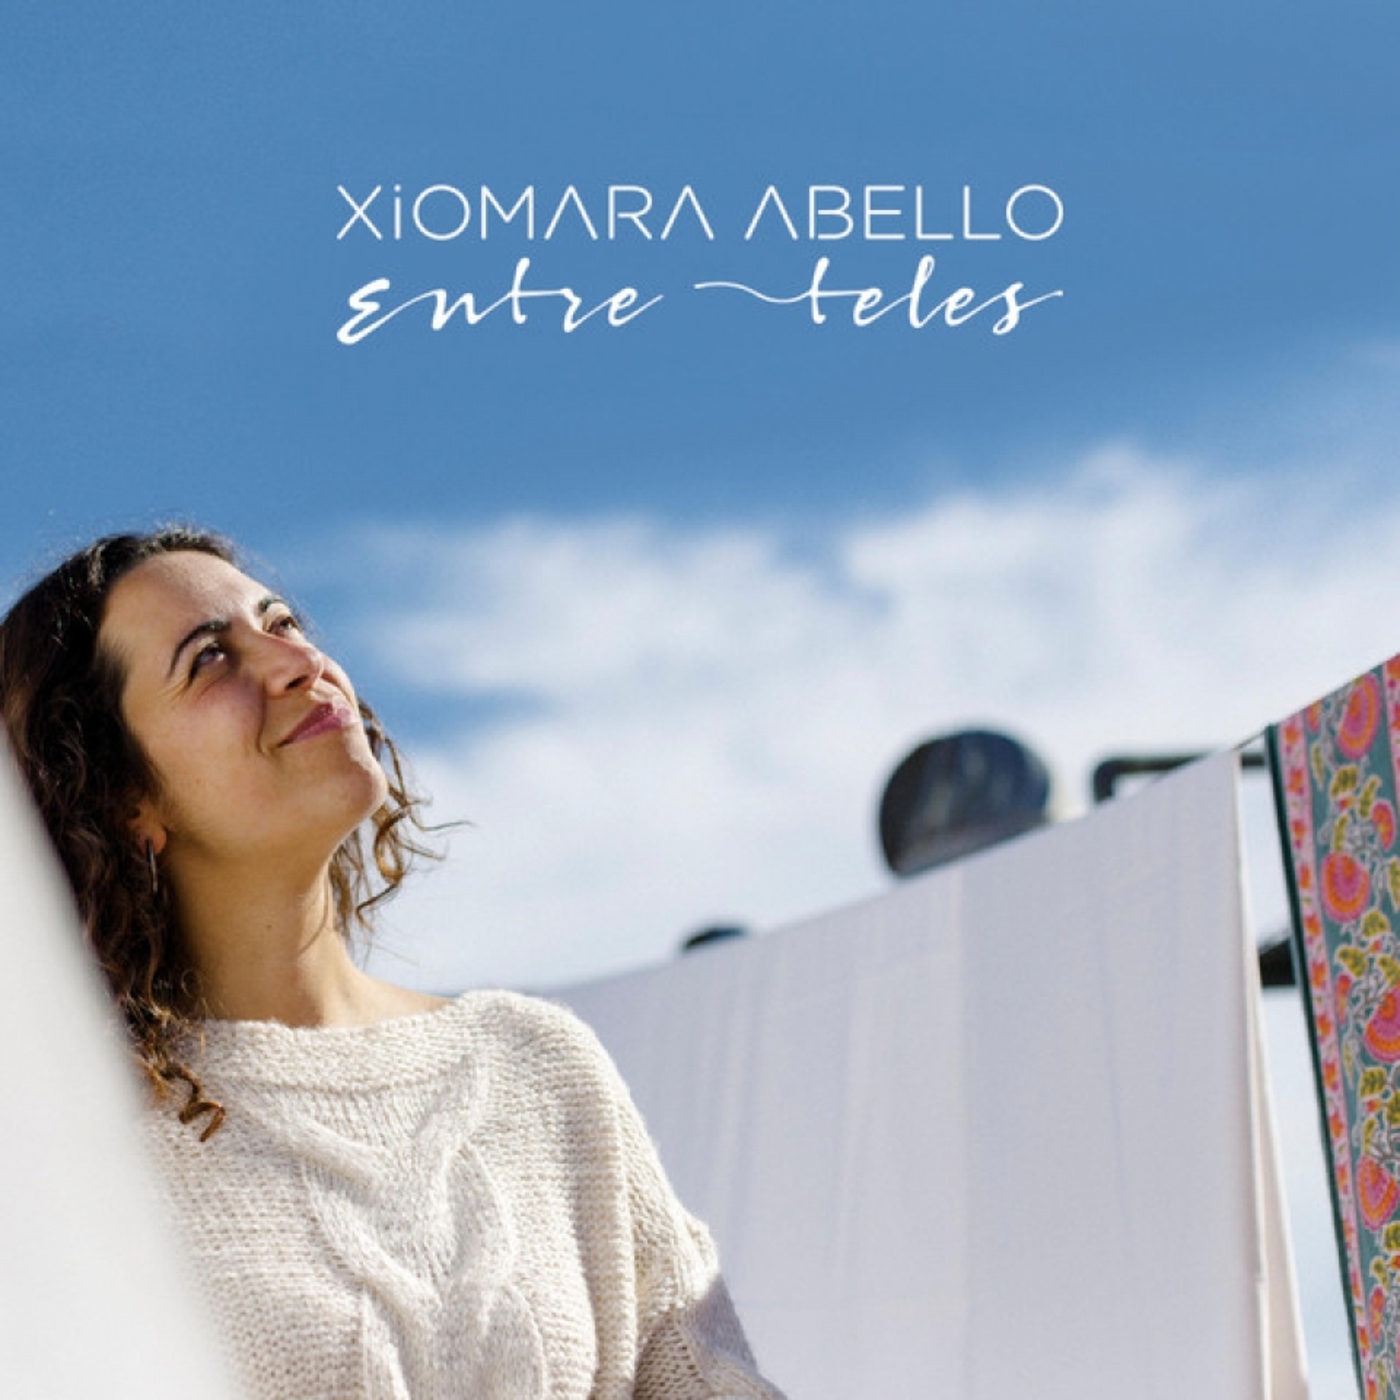 Xiomara Abello - Entre teles | musica en valencià